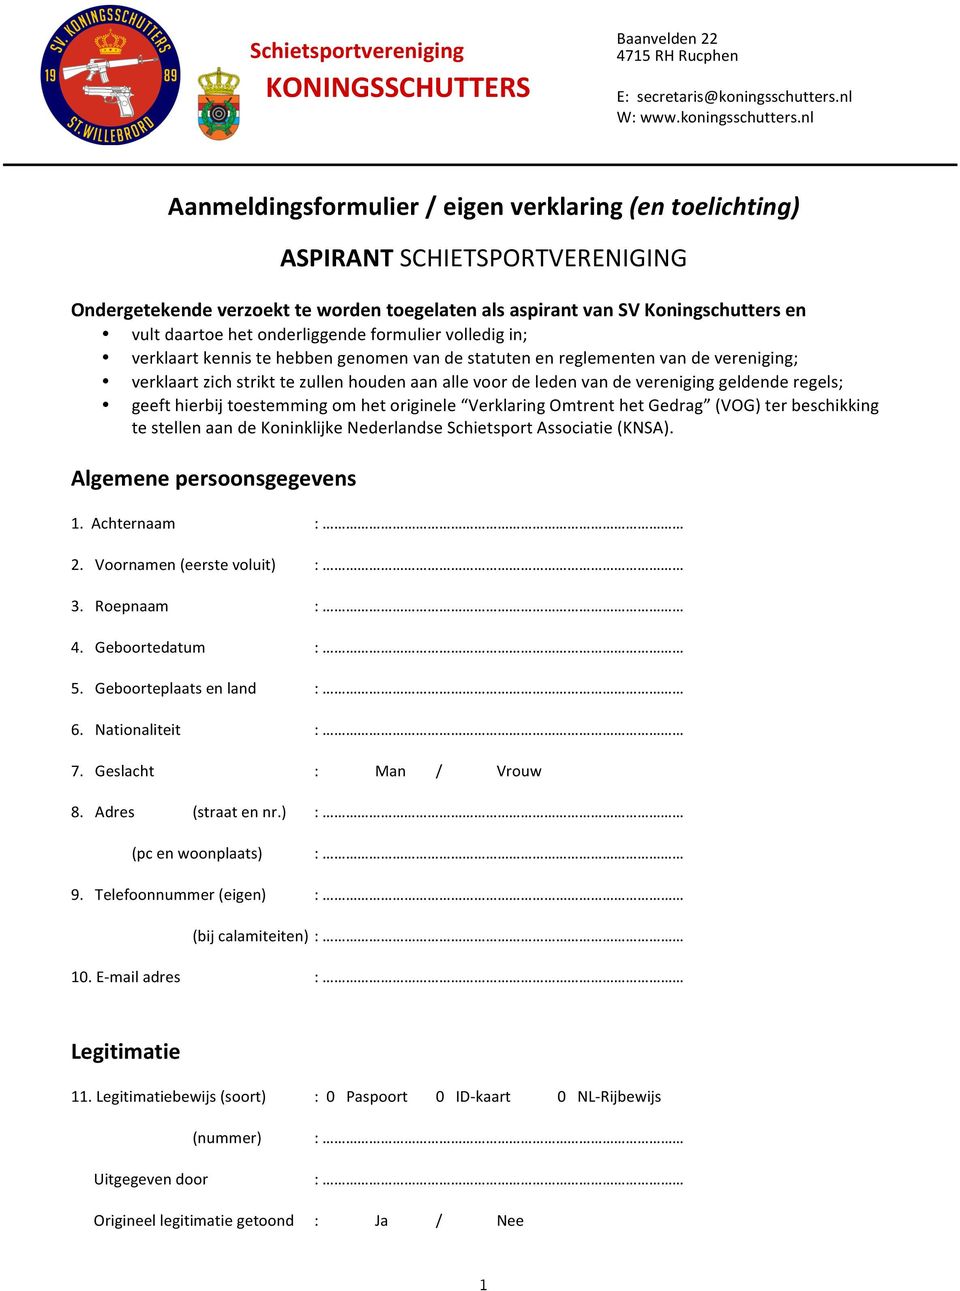 vereniging geldende regels; geeft hierbij toestemming om het originele Verklaring Omtrent het Gedrag (VOG) ter beschikking te stellen aan de Koninklijke Nederlandse Schietsport Associatie (KNSA).